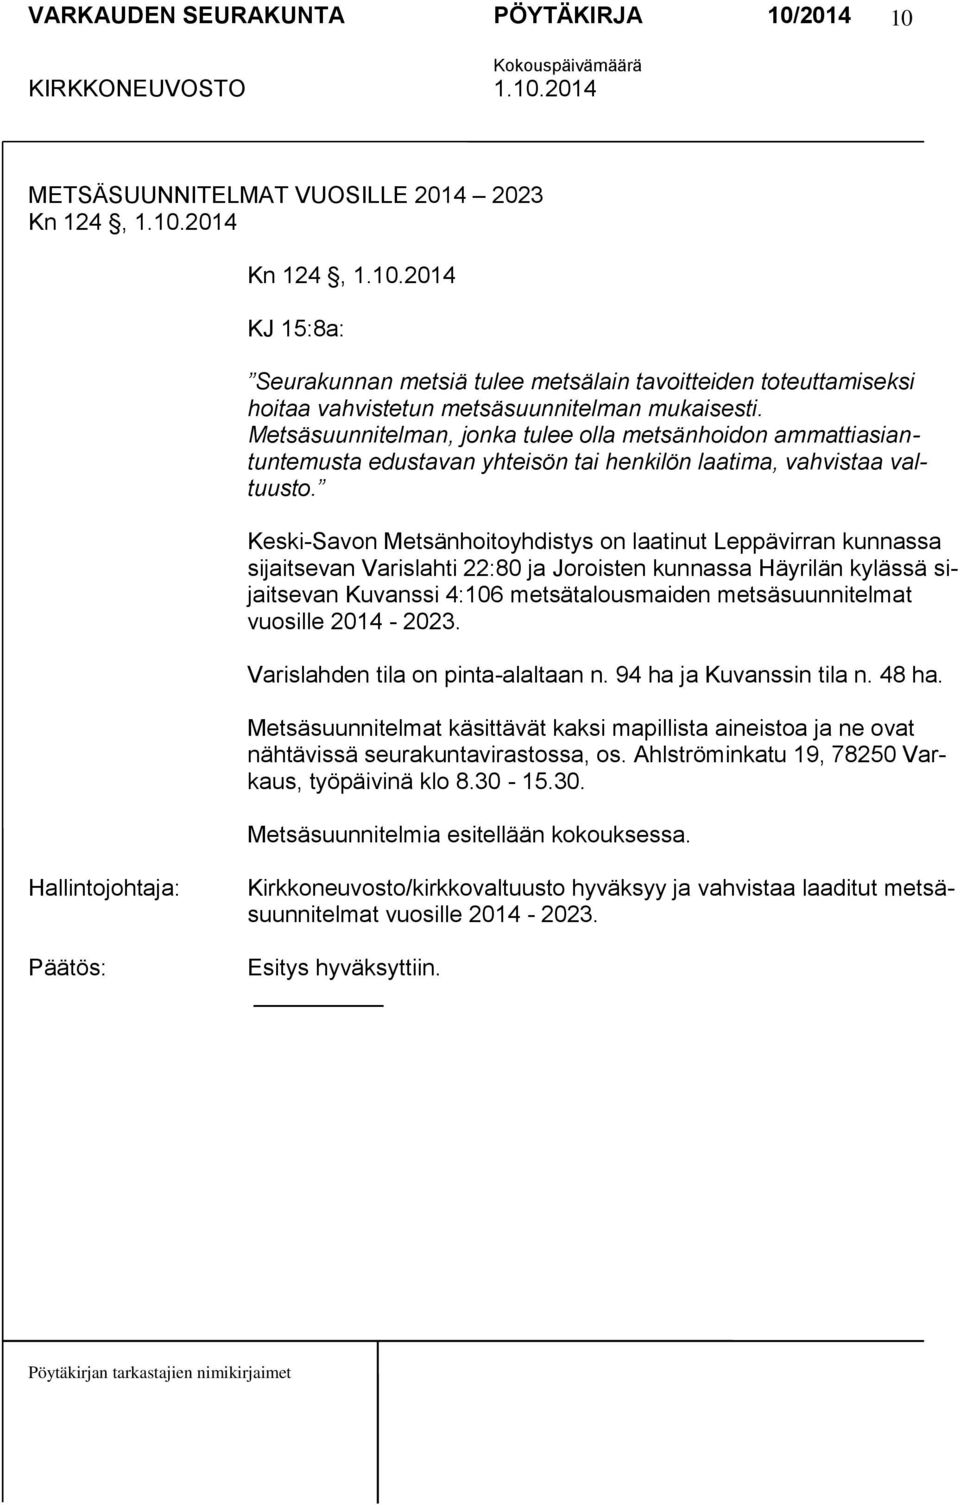 Keski-Savon Metsänhoitoyhdistys on laatinut Leppävirran kunnassa sijaitsevan Varislahti 22:80 ja Joroisten kunnassa Häyrilän kylässä sijaitsevan Kuvanssi 4:106 metsätalousmaiden metsäsuunnitelmat